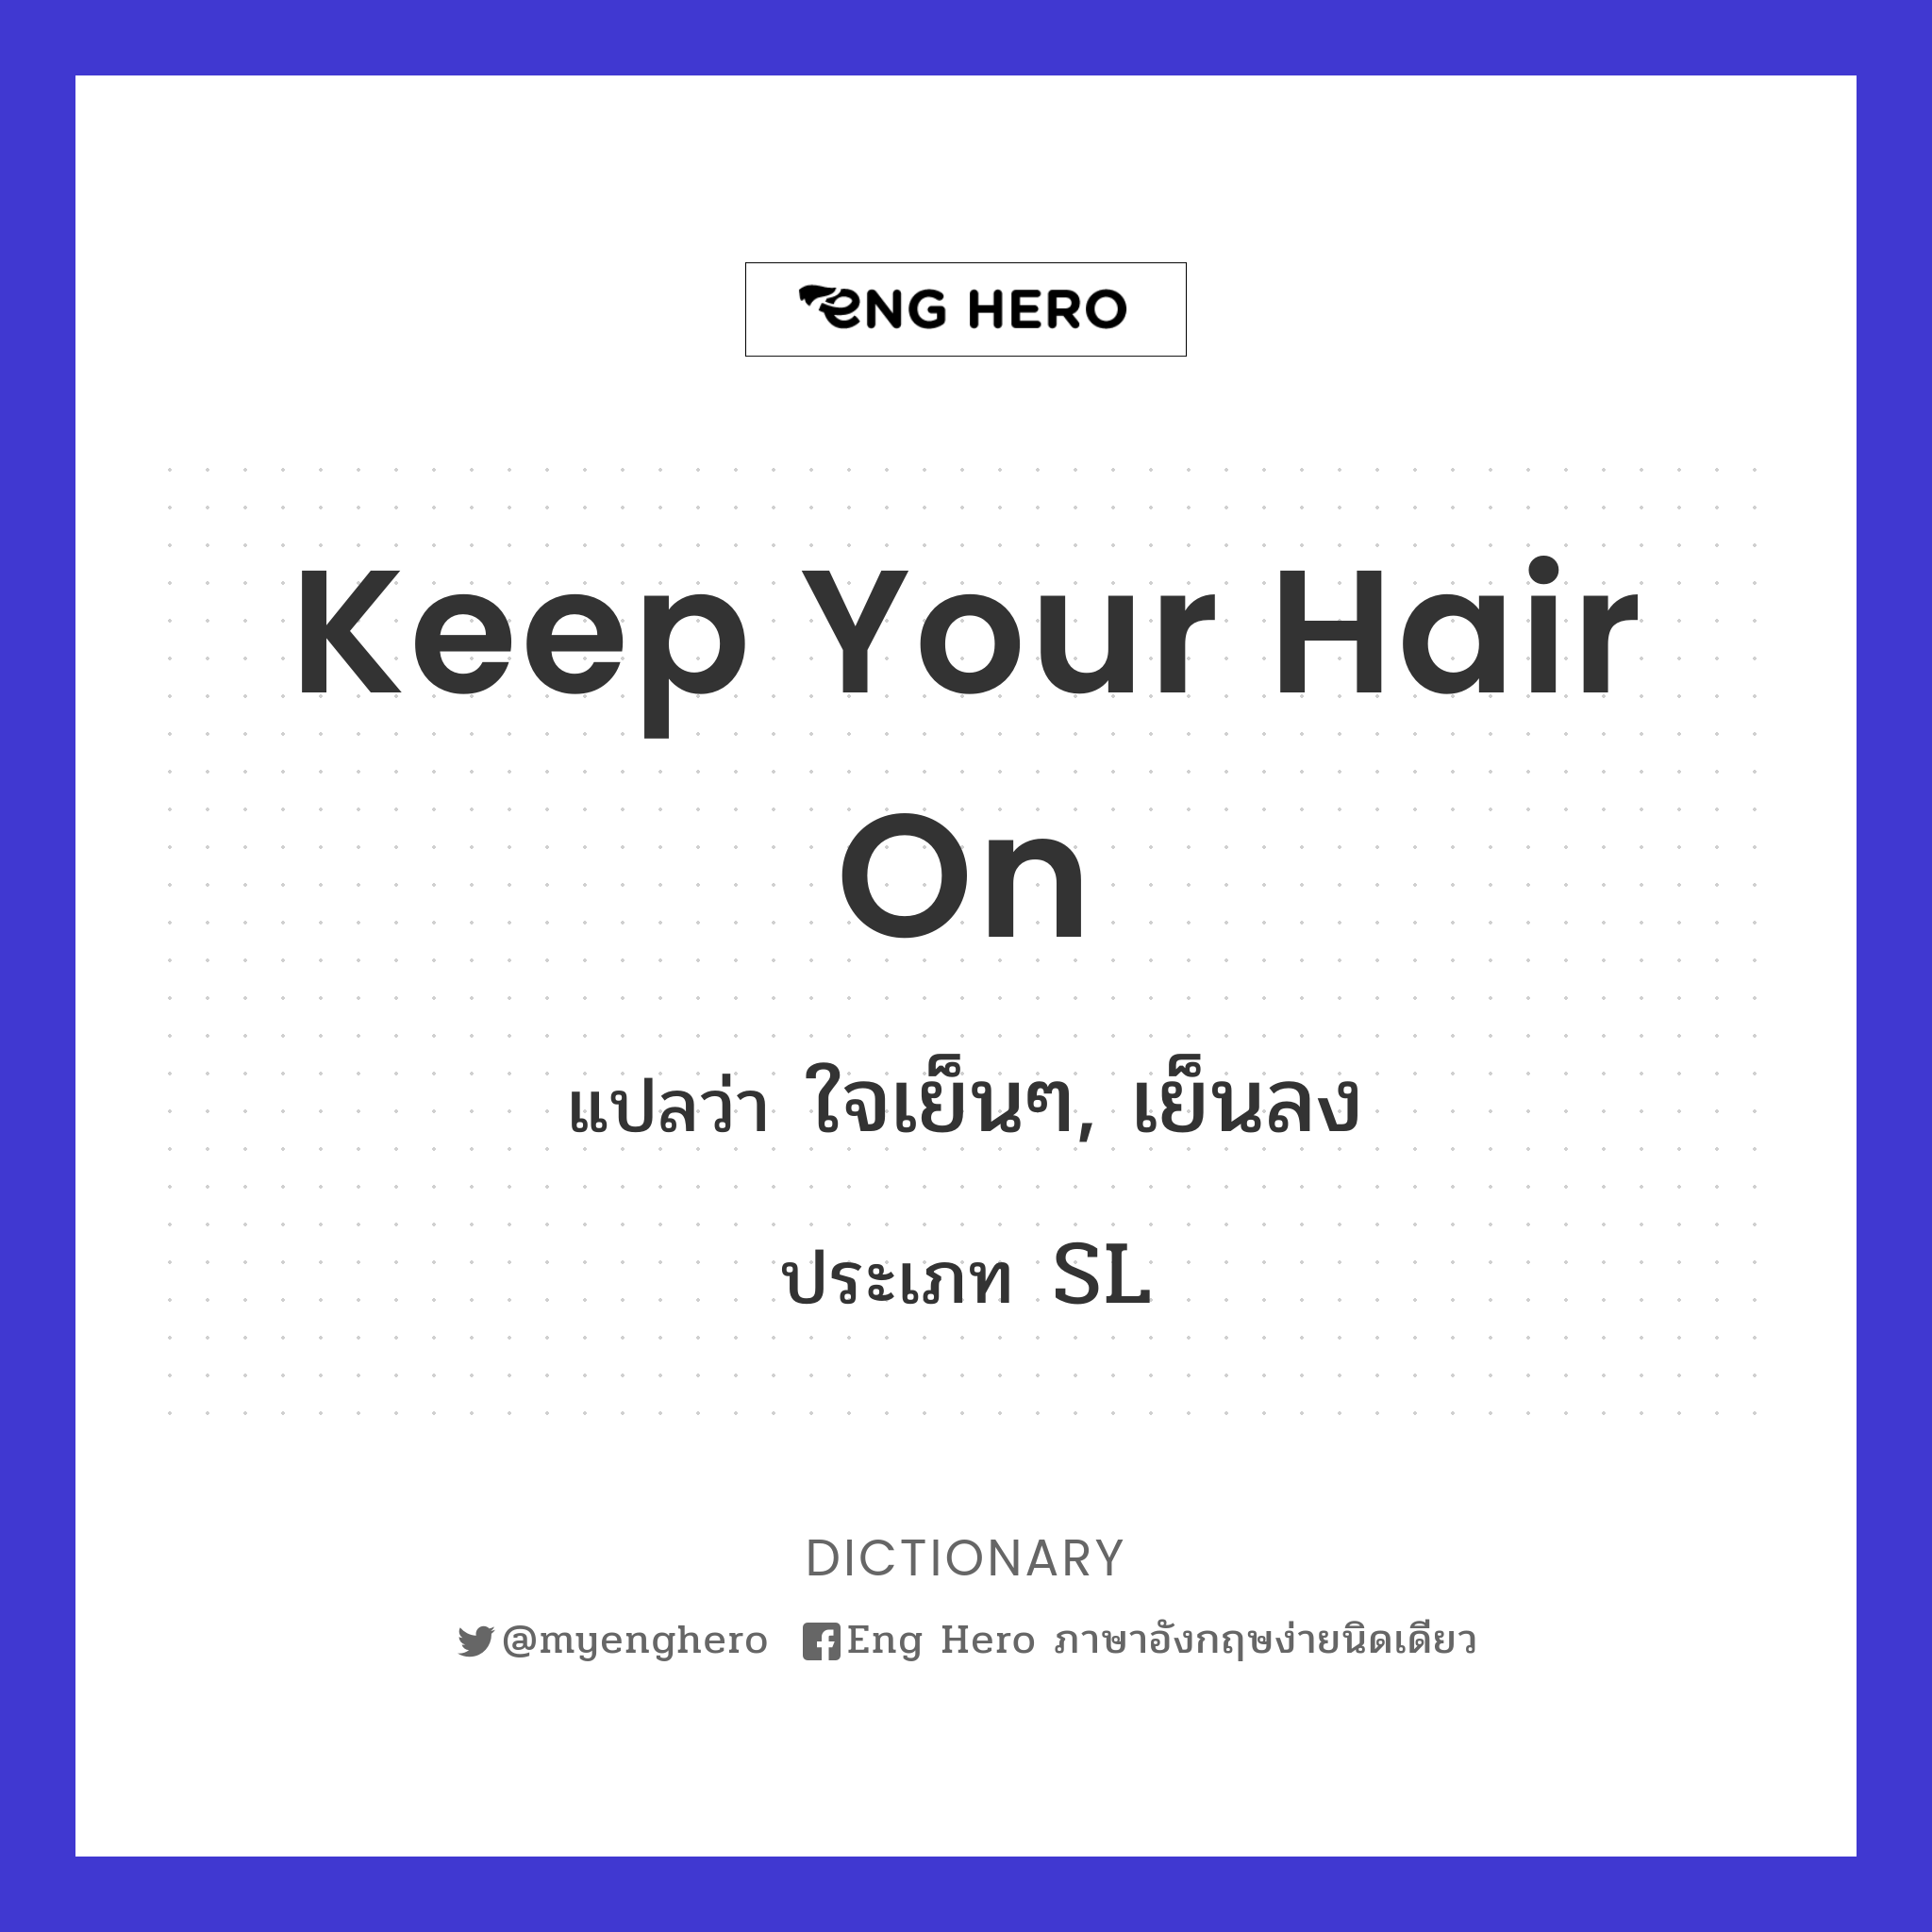 Keep your hair on